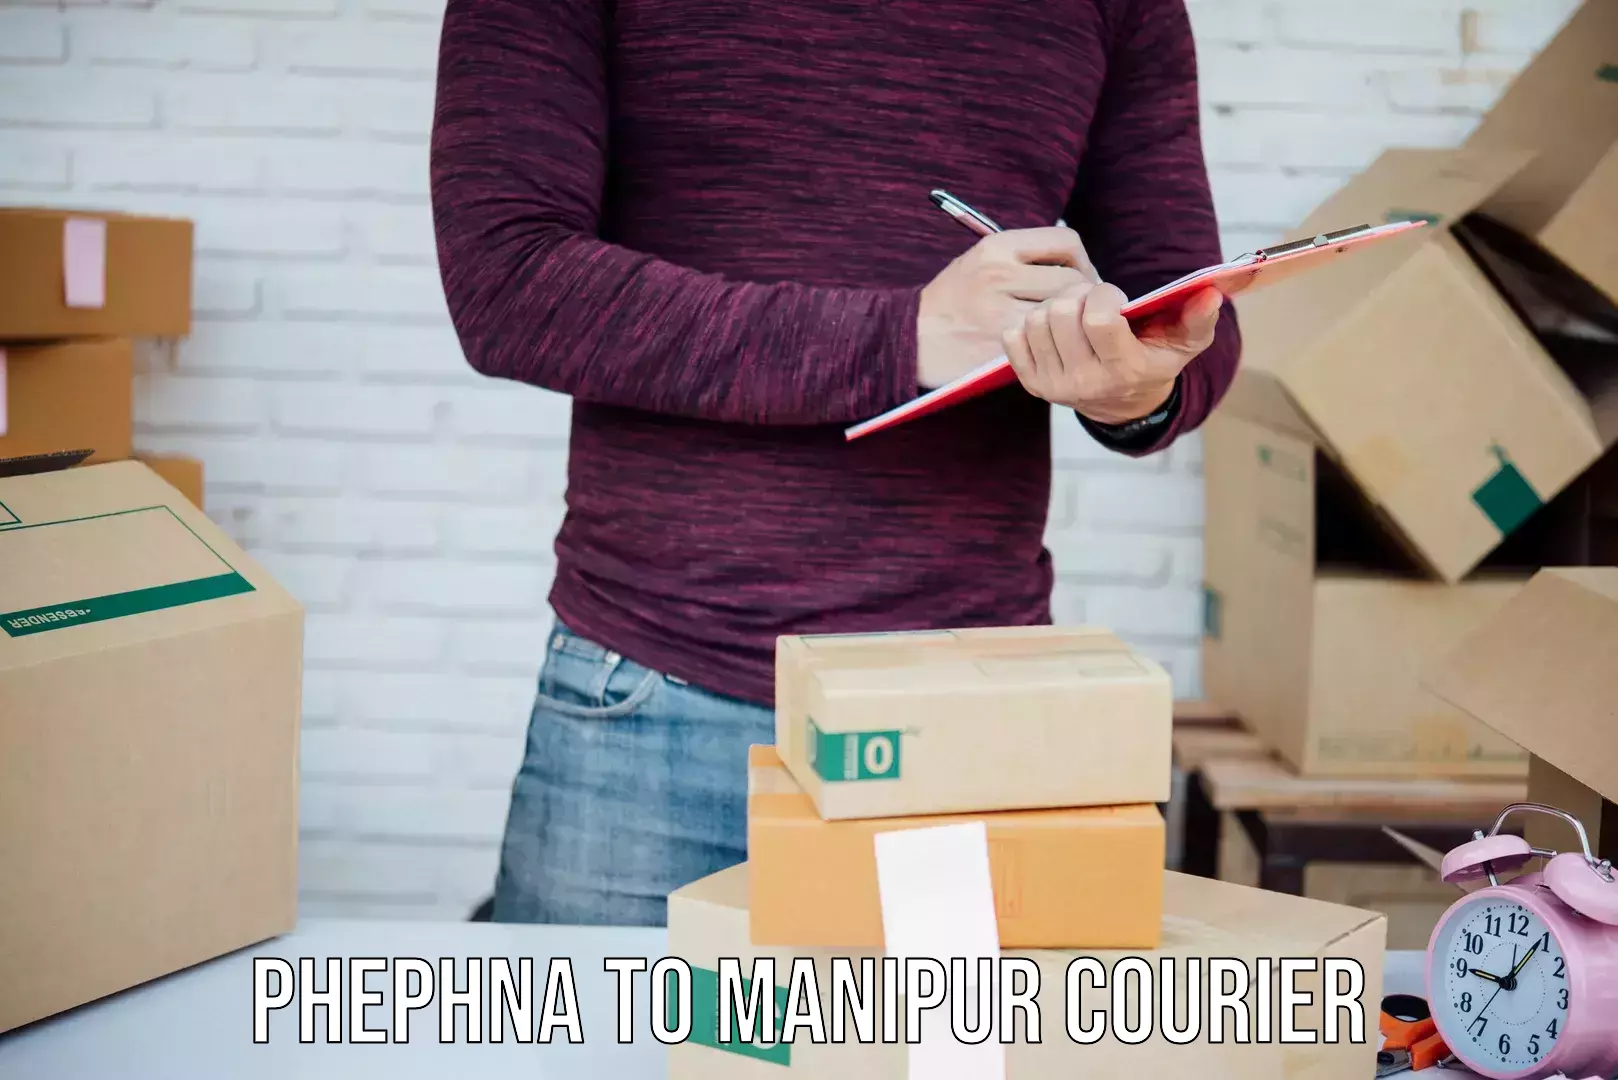 24-hour delivery options Phephna to Kaptipada